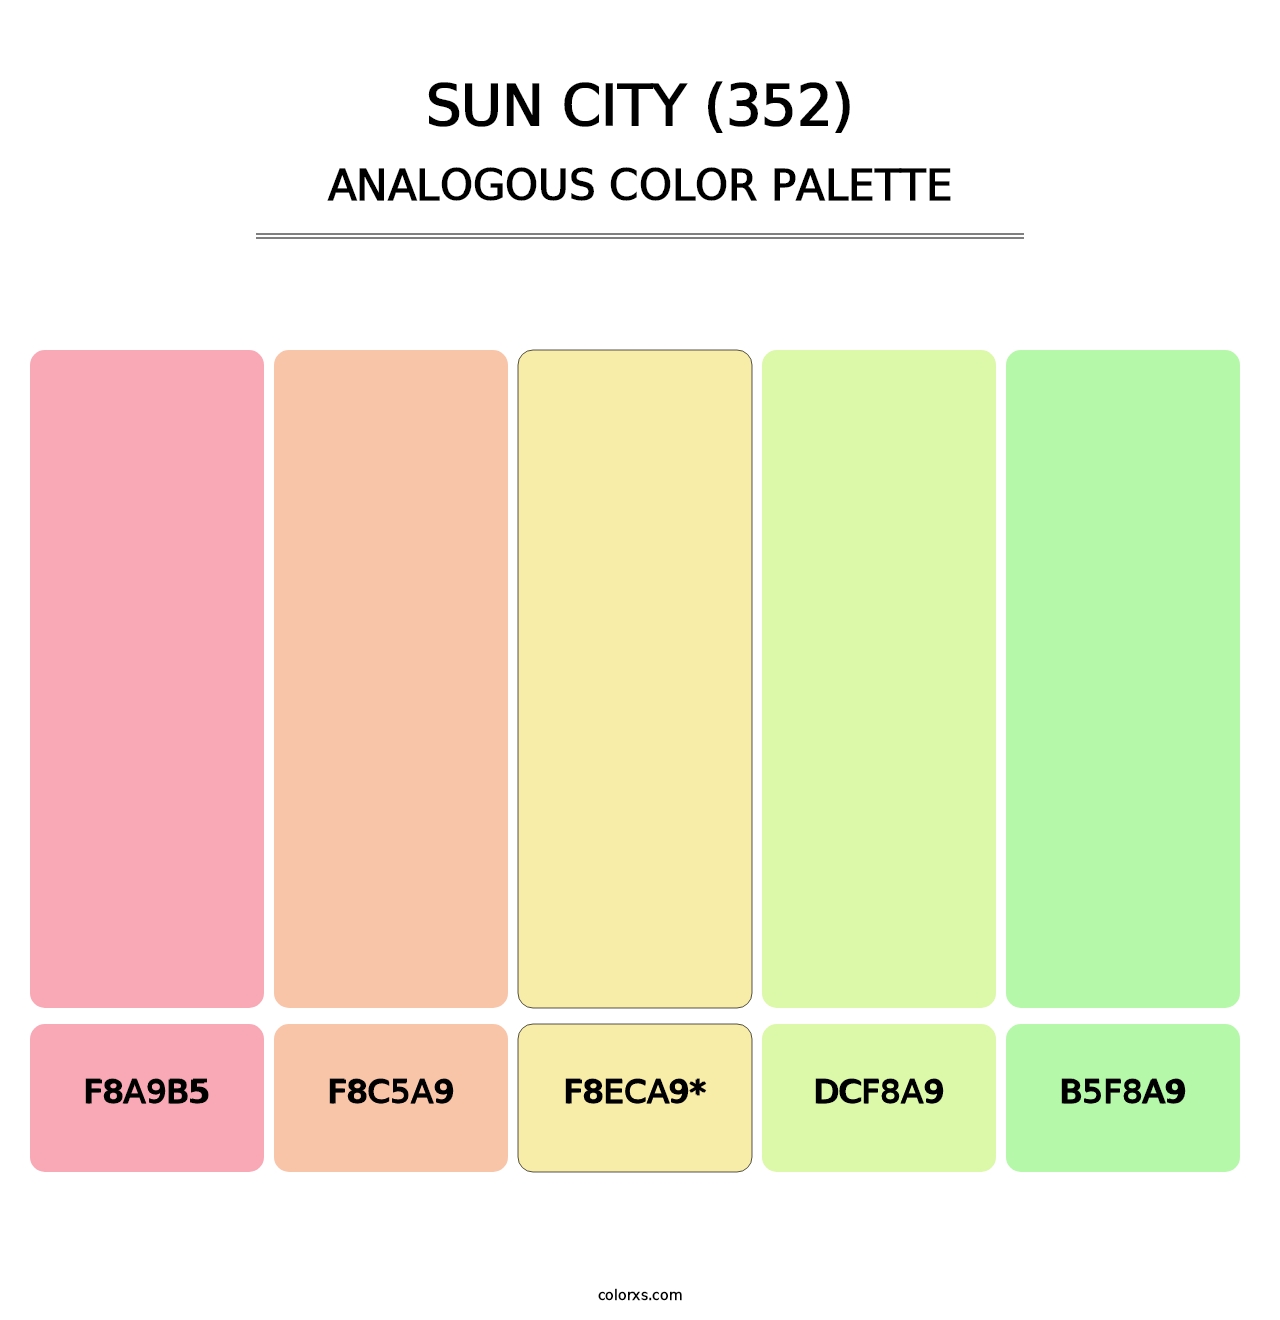 Sun City (352) - Analogous Color Palette